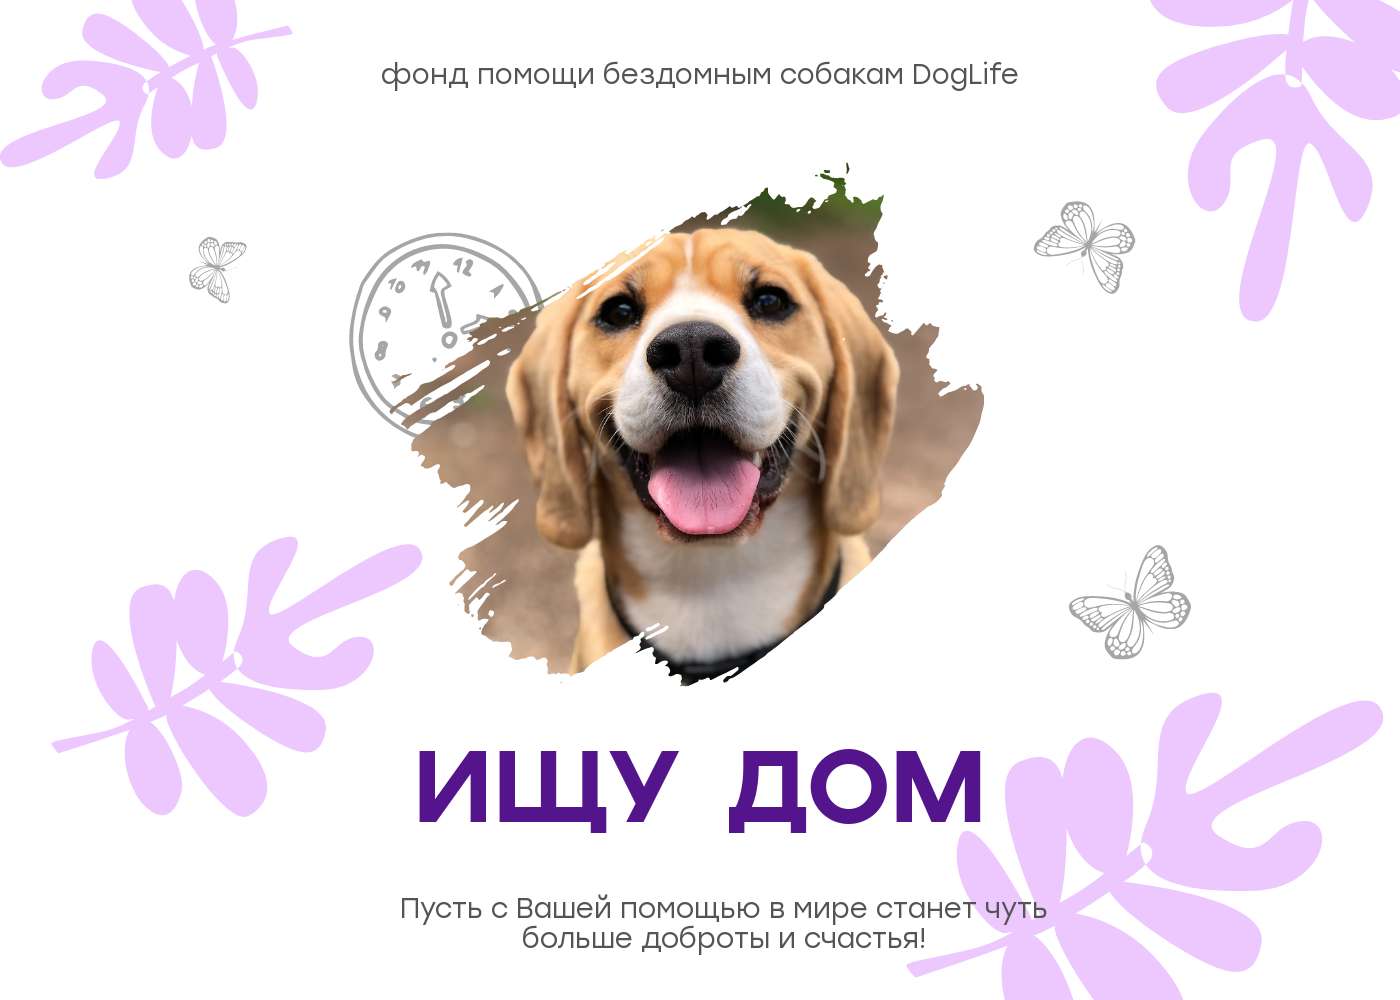 Симпатичная публикация для фонда помощи бездомным животным с бело-фиолетовым оформлением и фото